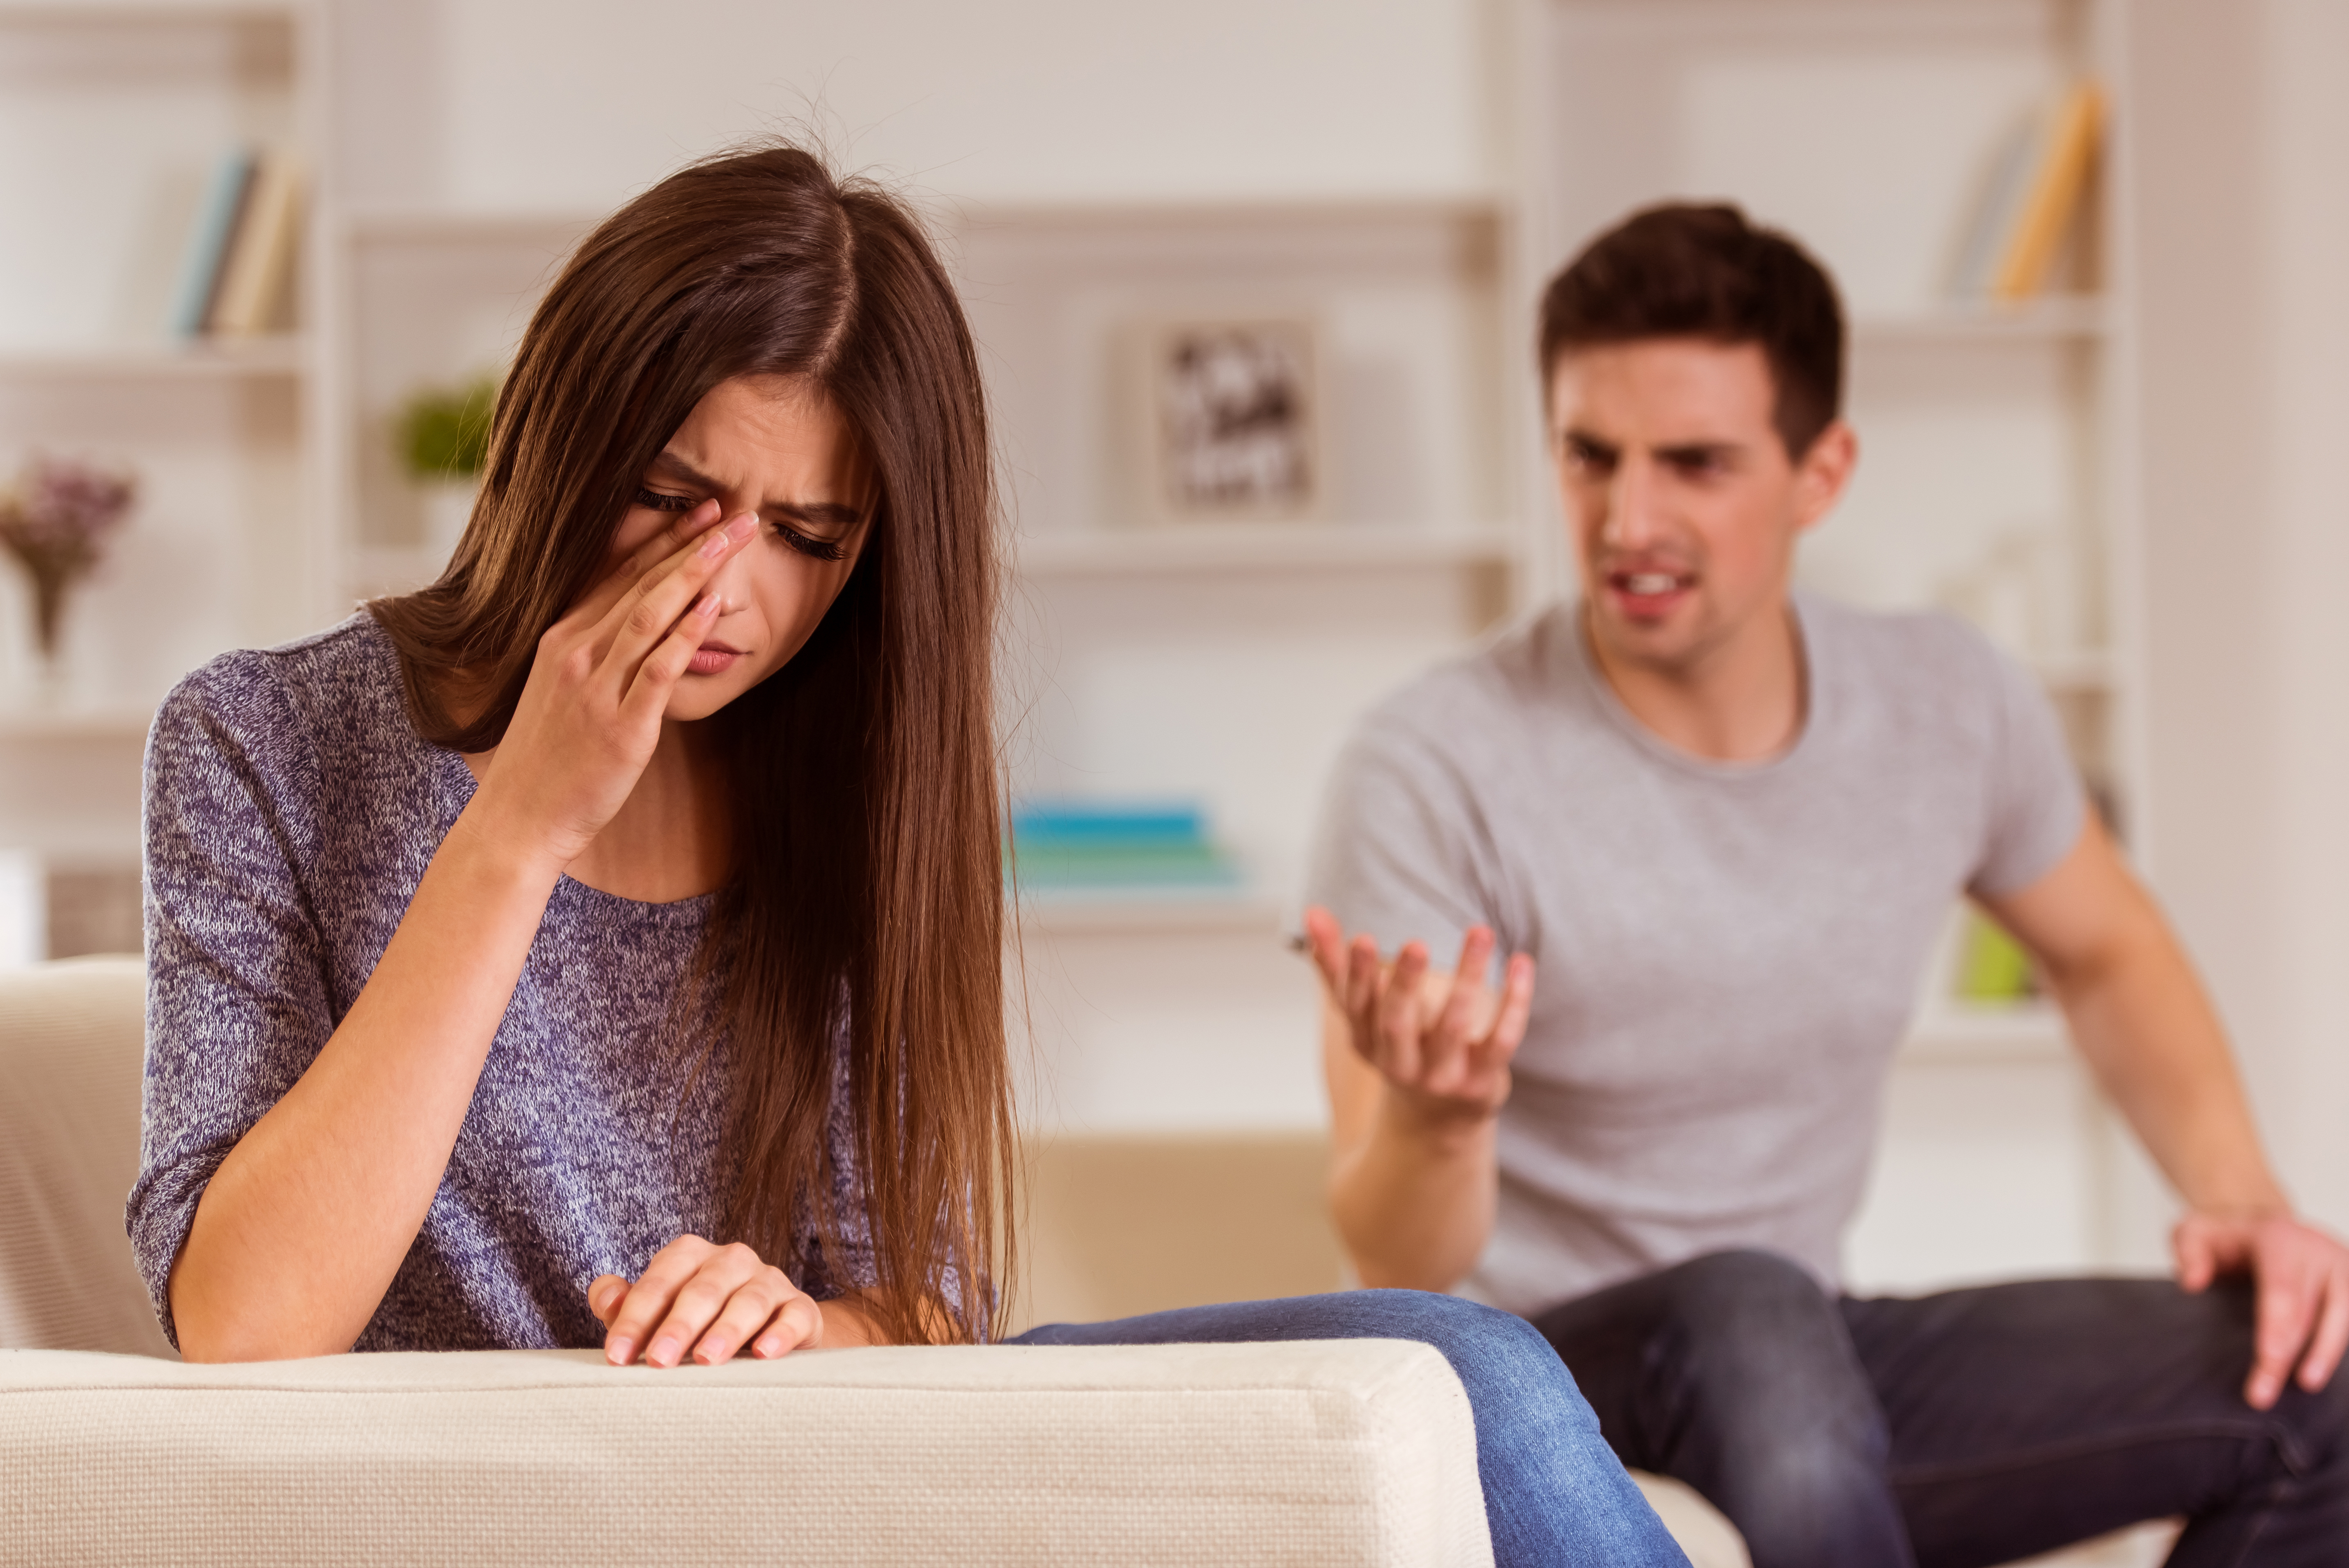 Une femme qui pleure pendant une dispute avec son mari | Source : Shutterstock